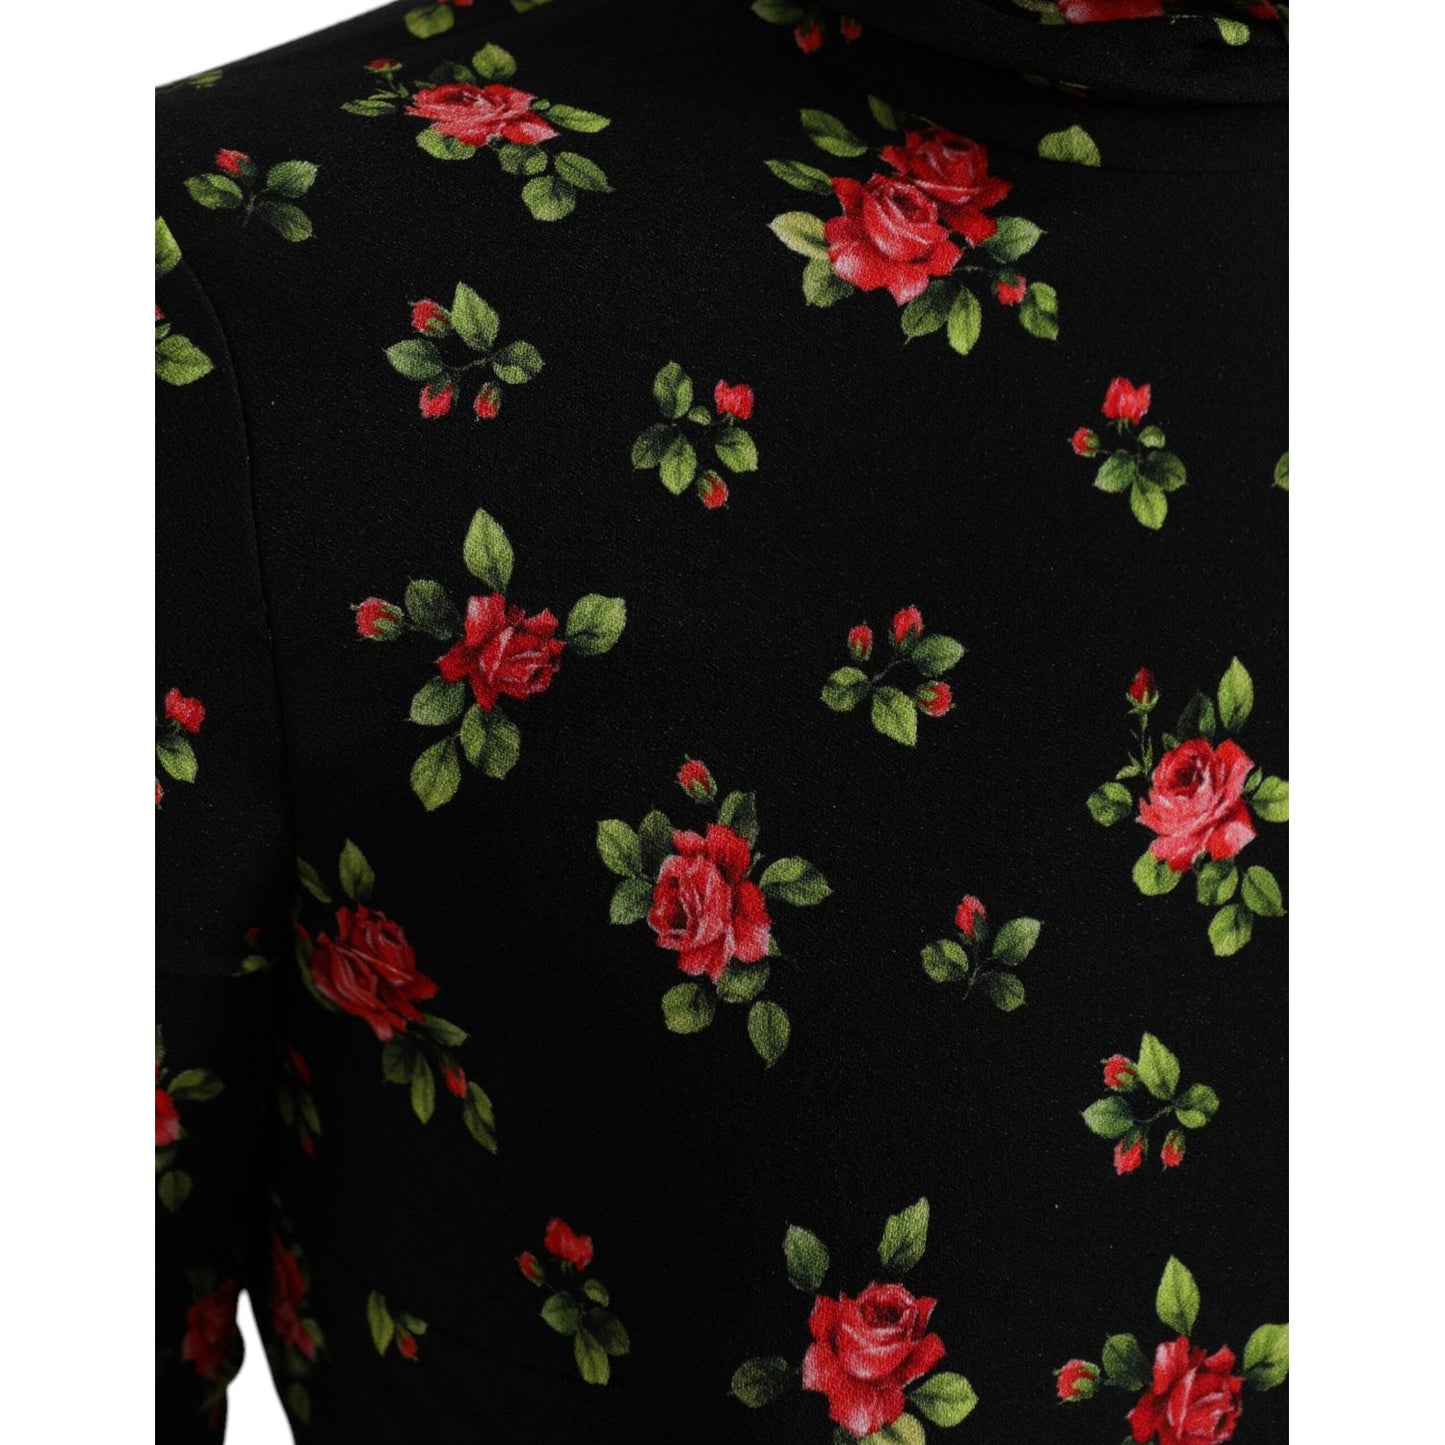 Dolce & Gabbana Elegant Floral Silk Blend Top black-rose-print-turtle-neck-blouse-top